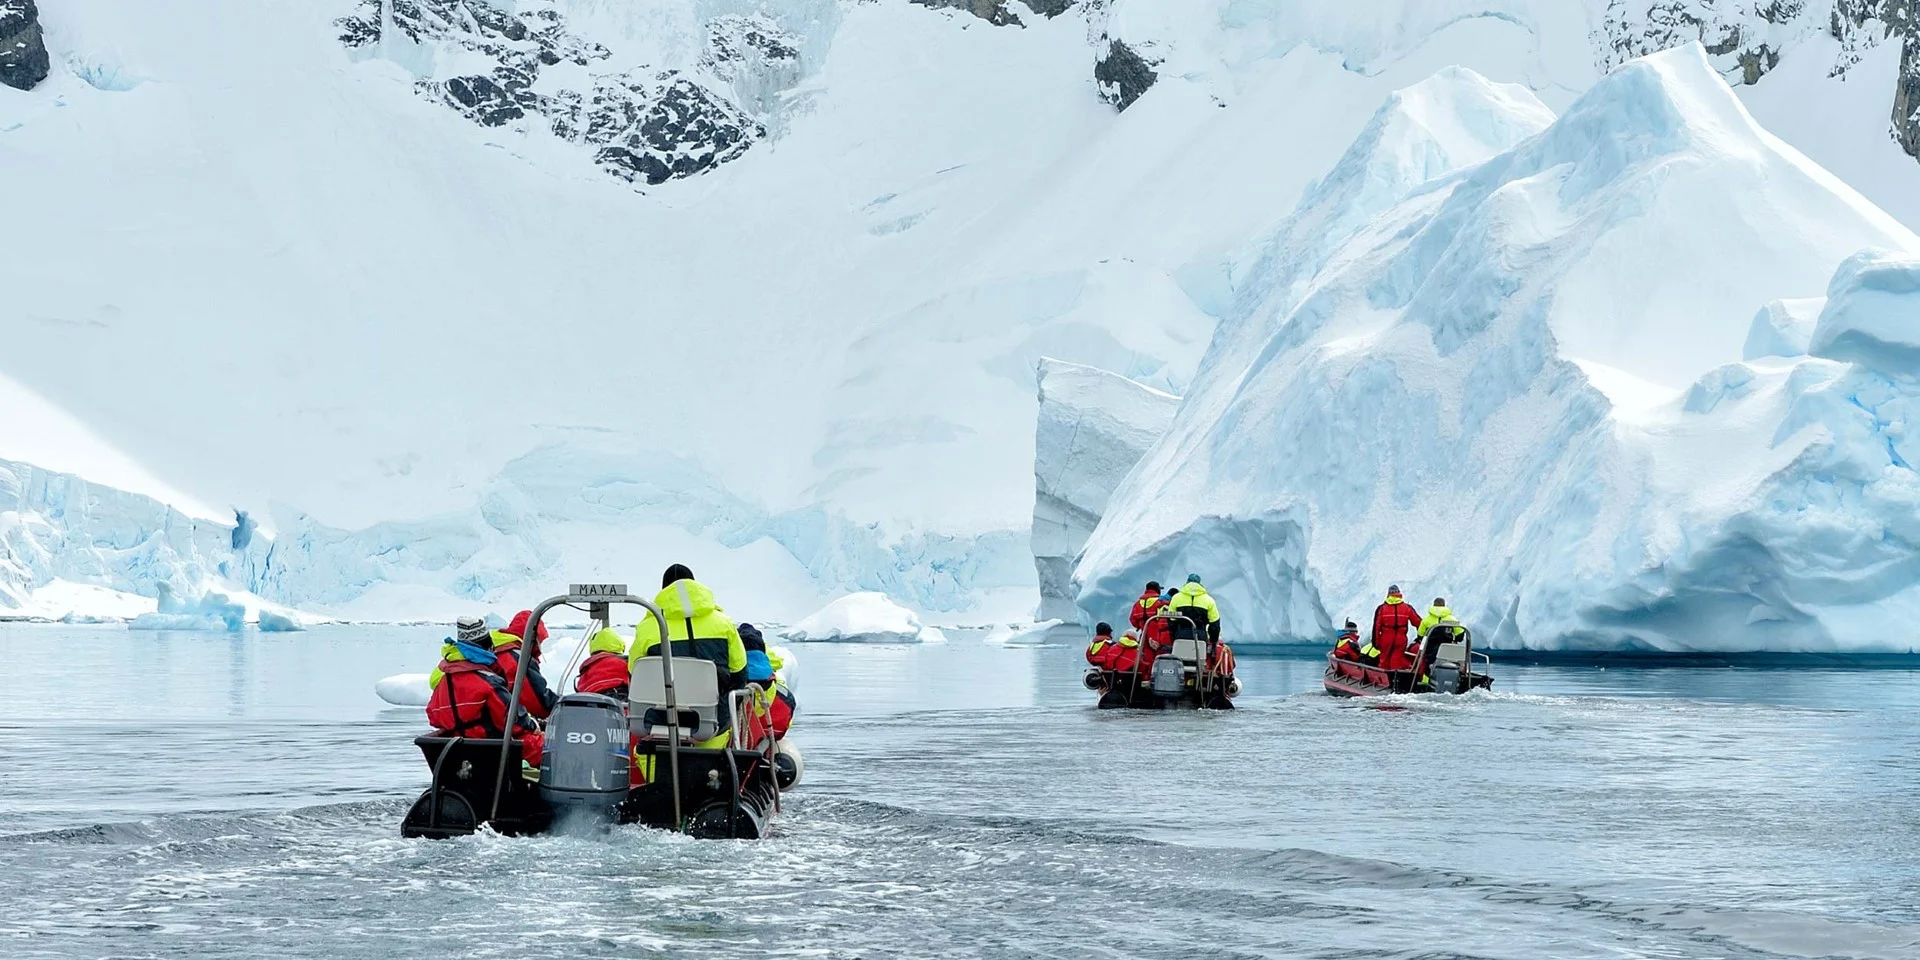 Expedition boats exploring the icy waters of Antarctica. Credit: Marsel Van oosten.